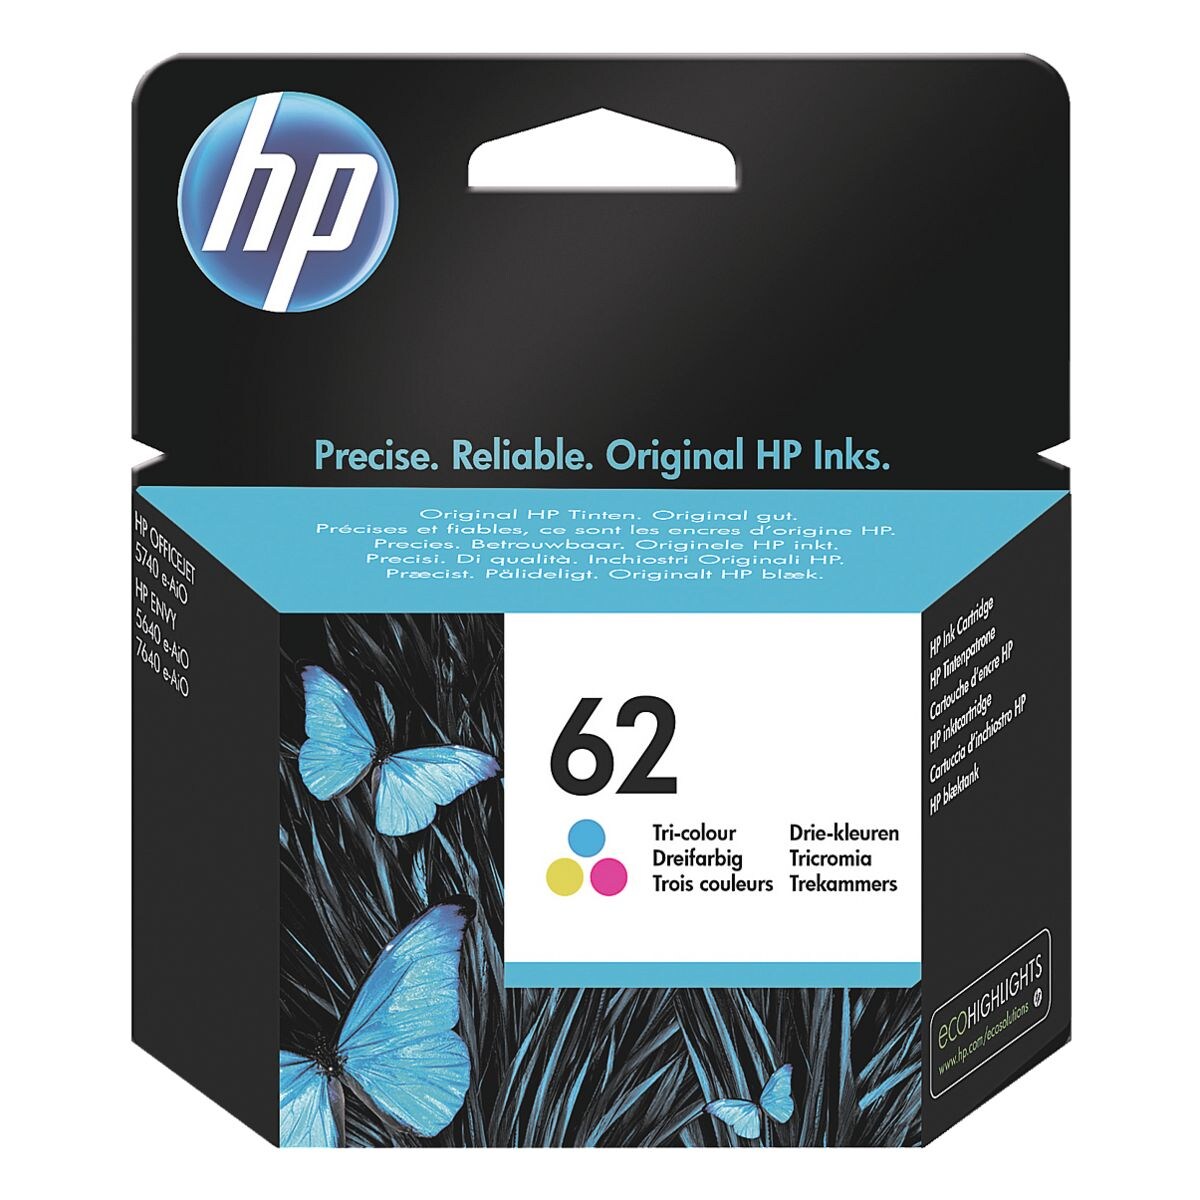 HP Inktpatroon HP 62 CMY, 3-kleurig - C2P06AE